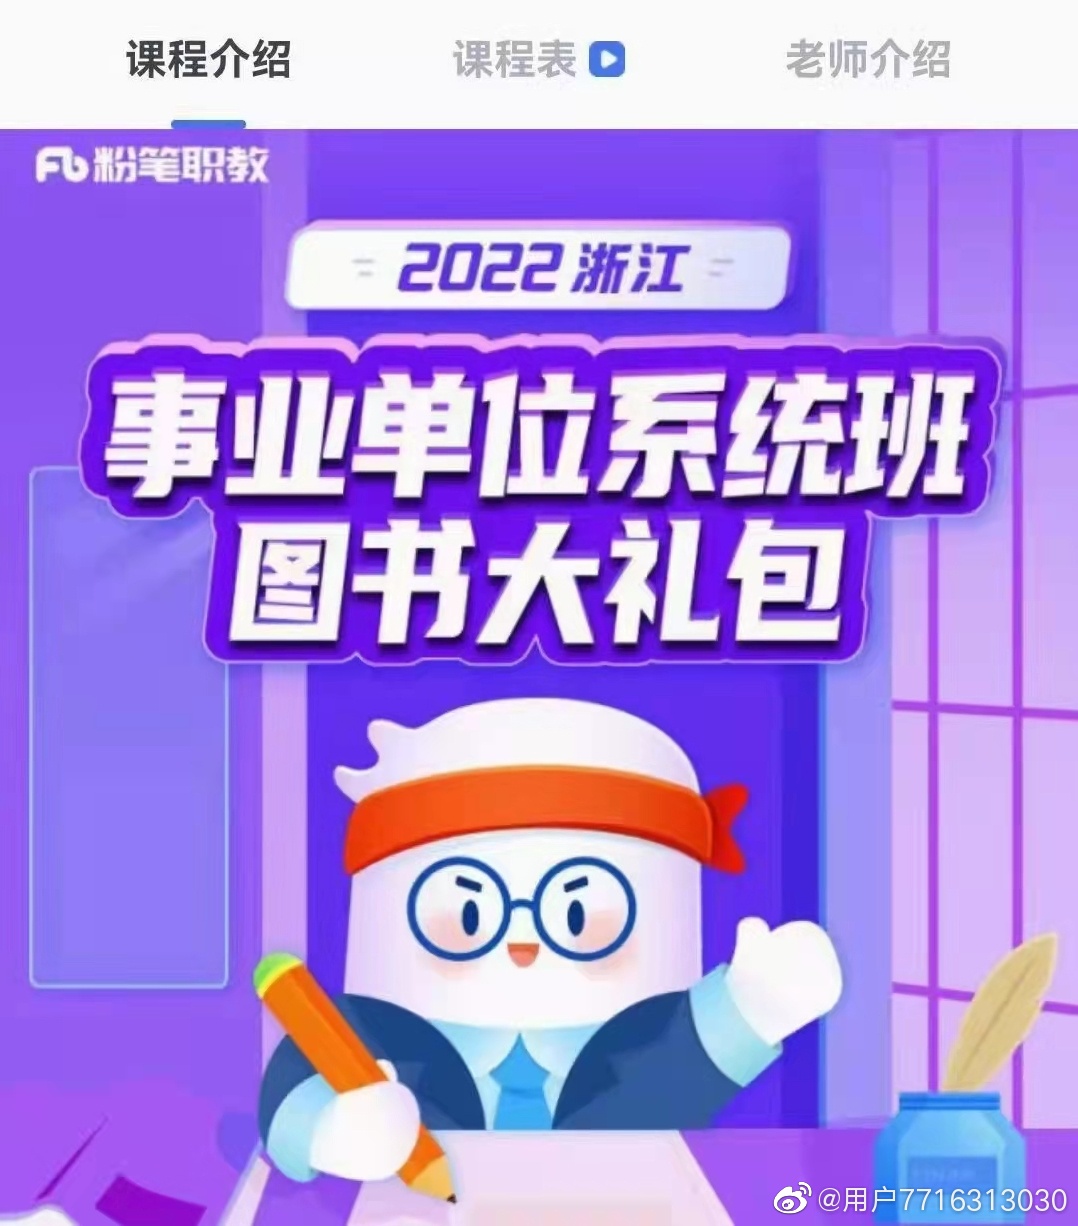 2022浙江事业单位系统班